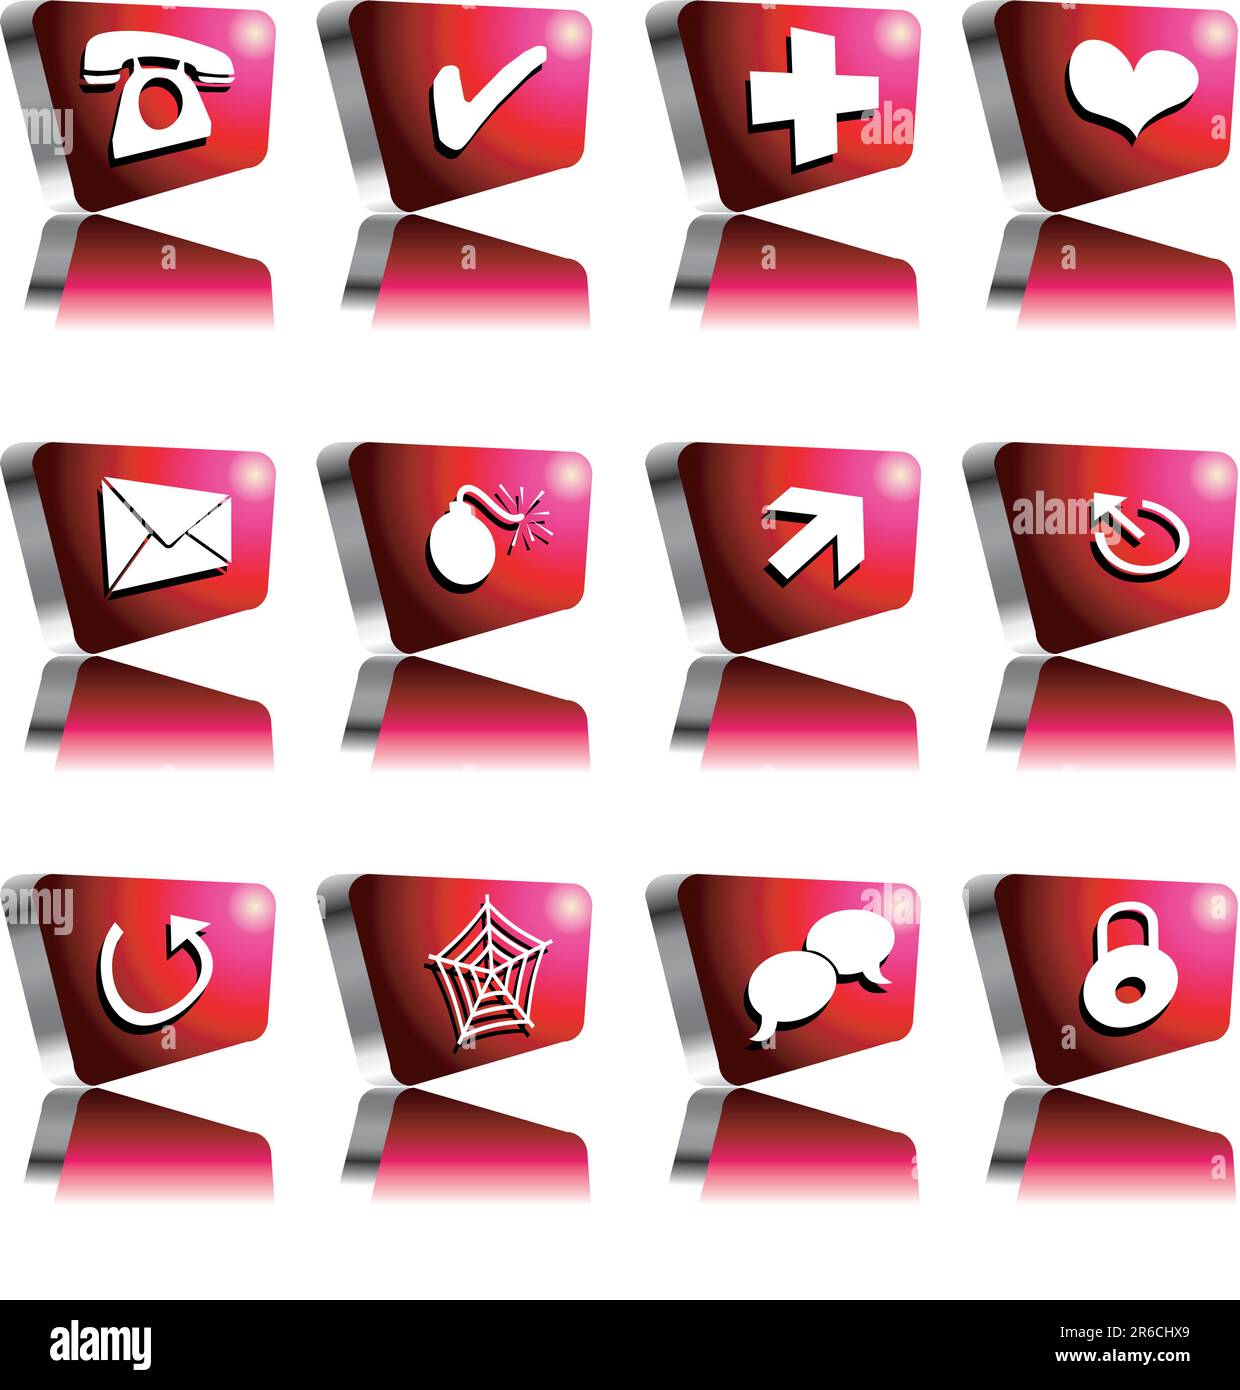 ilustración vectorial para un conjunto de icono de computadora en caja roja y plateada Ilustración del Vector